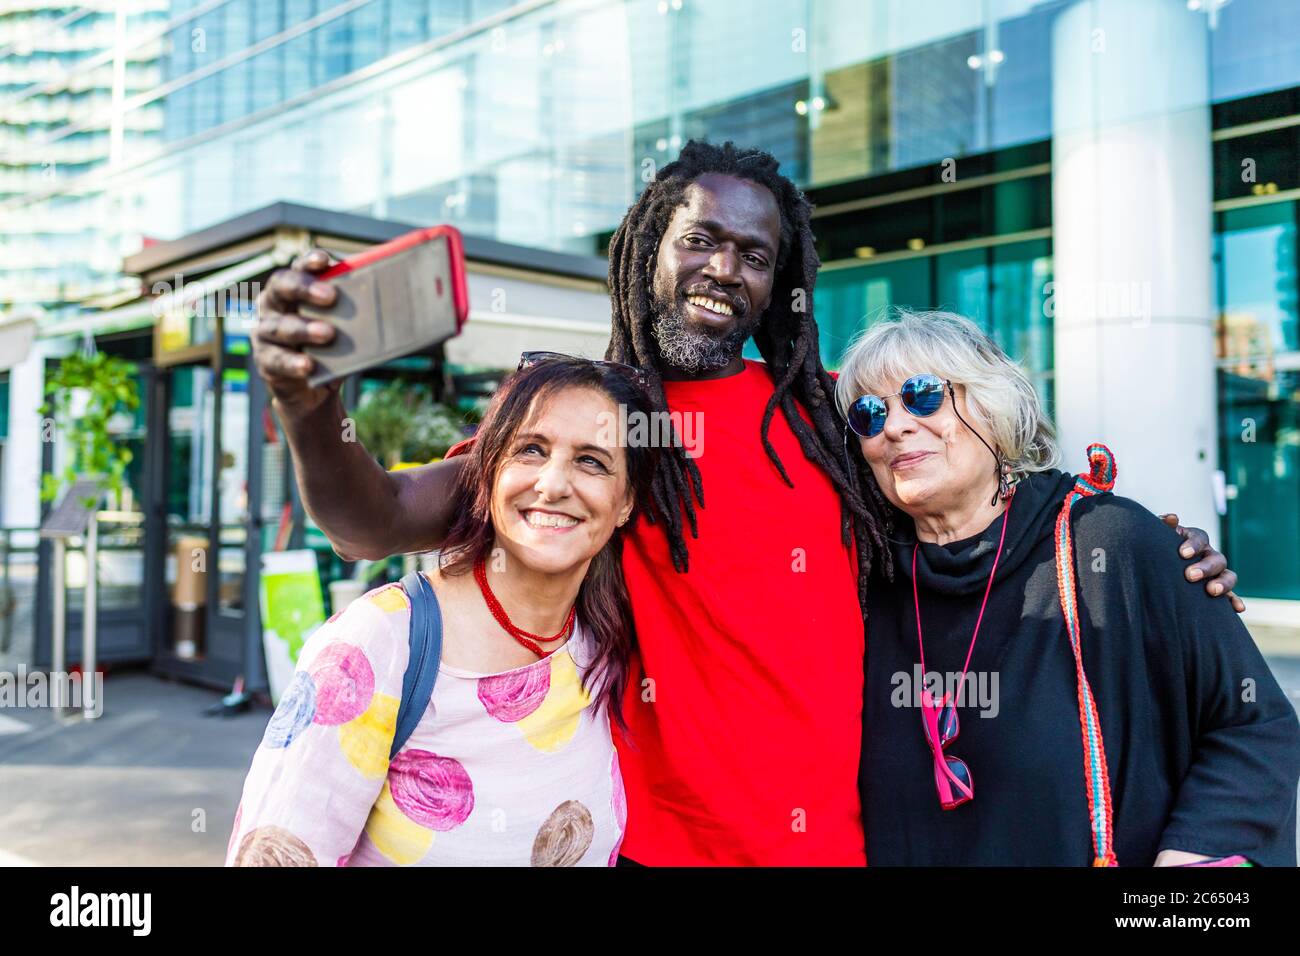 Uomo nero con dreadlock e due donne caucasiche che prendono selfie con il telefono cellulare. Foto Stock